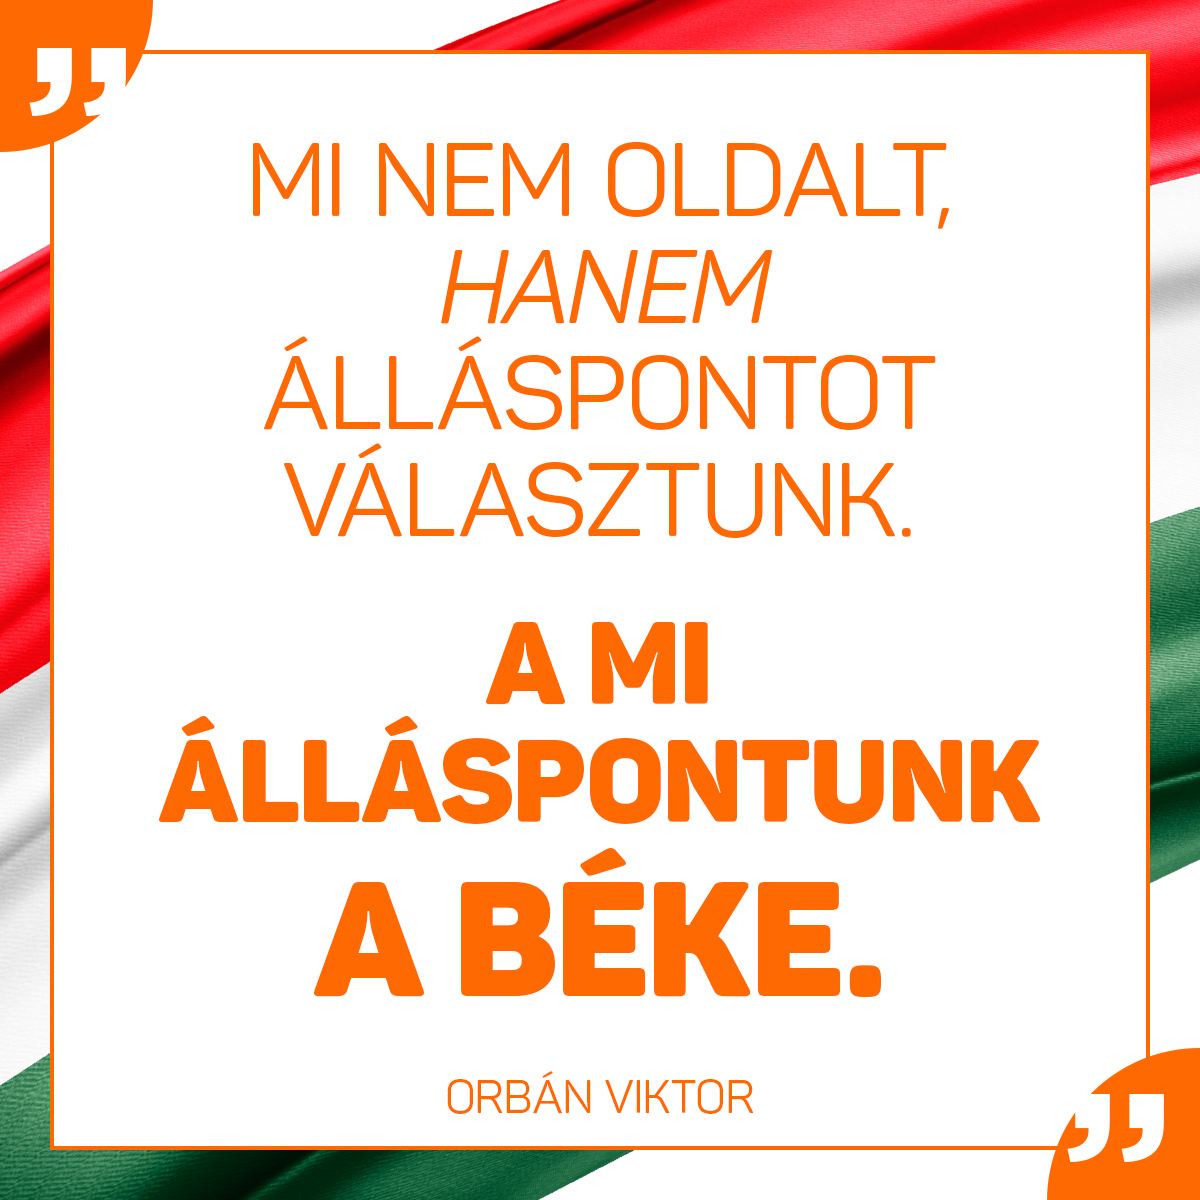 Az én felfogásom, és szerintem a magyar történelmi tapasztalat és a magyar észjárás is azt mondja, hogy nem oldalt kell választani, hanem álláspontot. Meg kell határozni, hogy mi a magyar érdek és mi az, ami egyben erkölcsileg is helyes.  Nekünk van ilyen álláspontunk. Ezt úgy hívják, hogy béke.